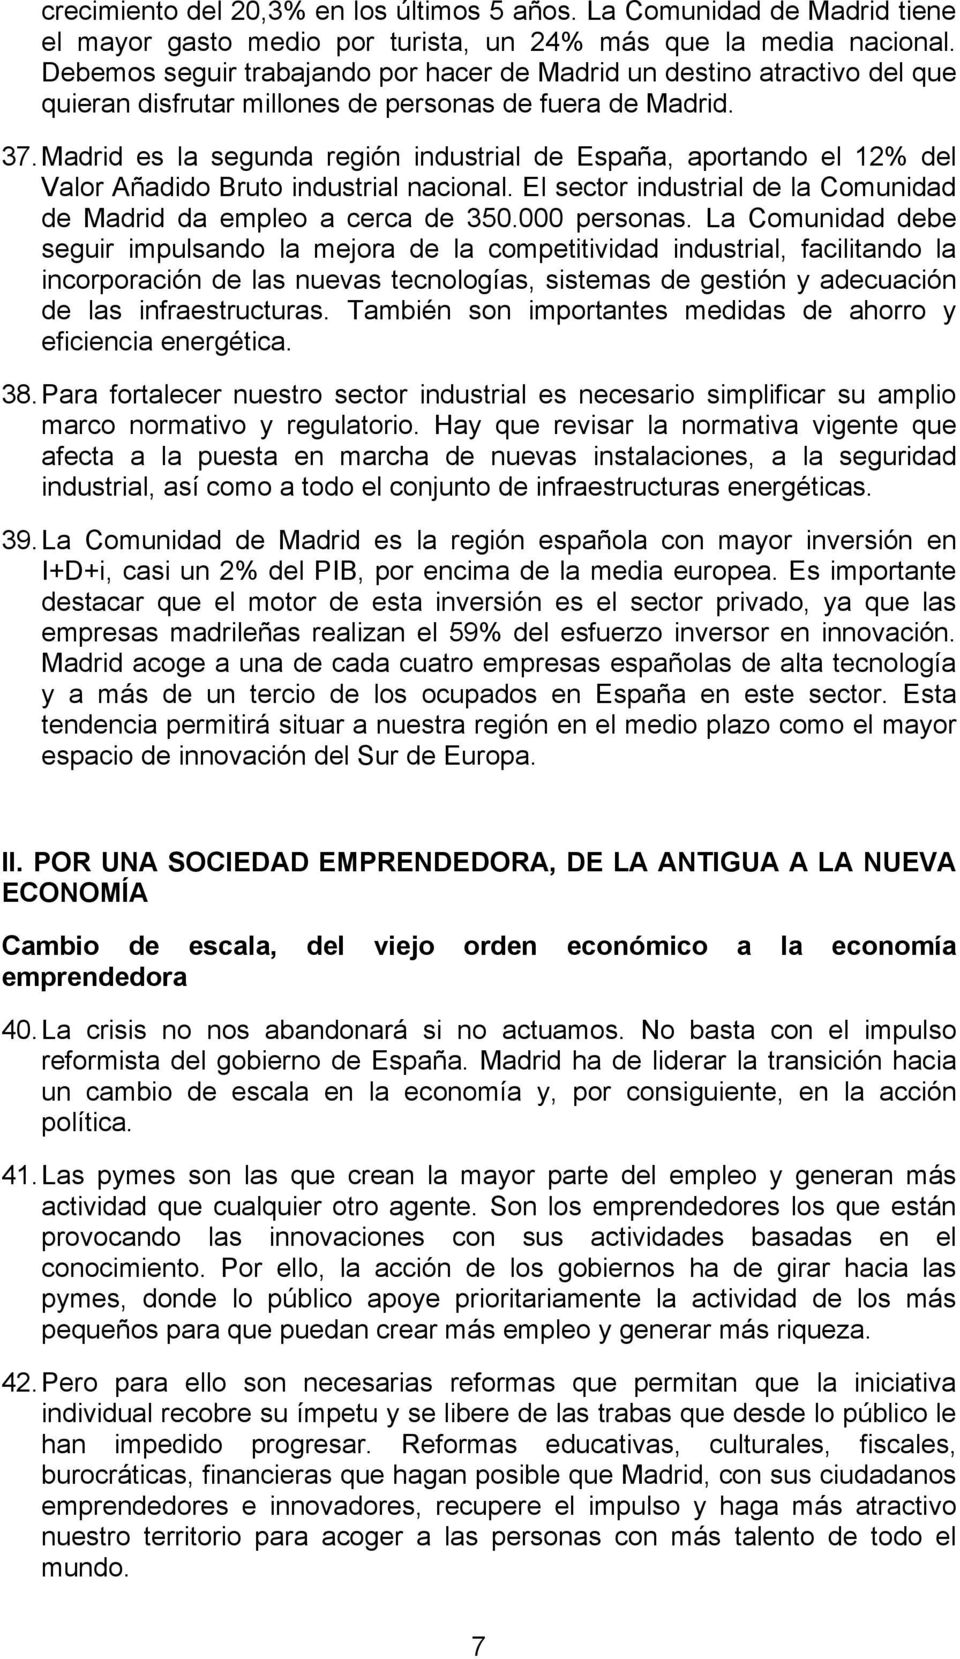 Madrid es la segunda región industrial de España, aportando el 12% del Valor Añadido Bruto industrial nacional. El sector industrial de la Comunidad de Madrid da empleo a cerca de 350.000 personas.